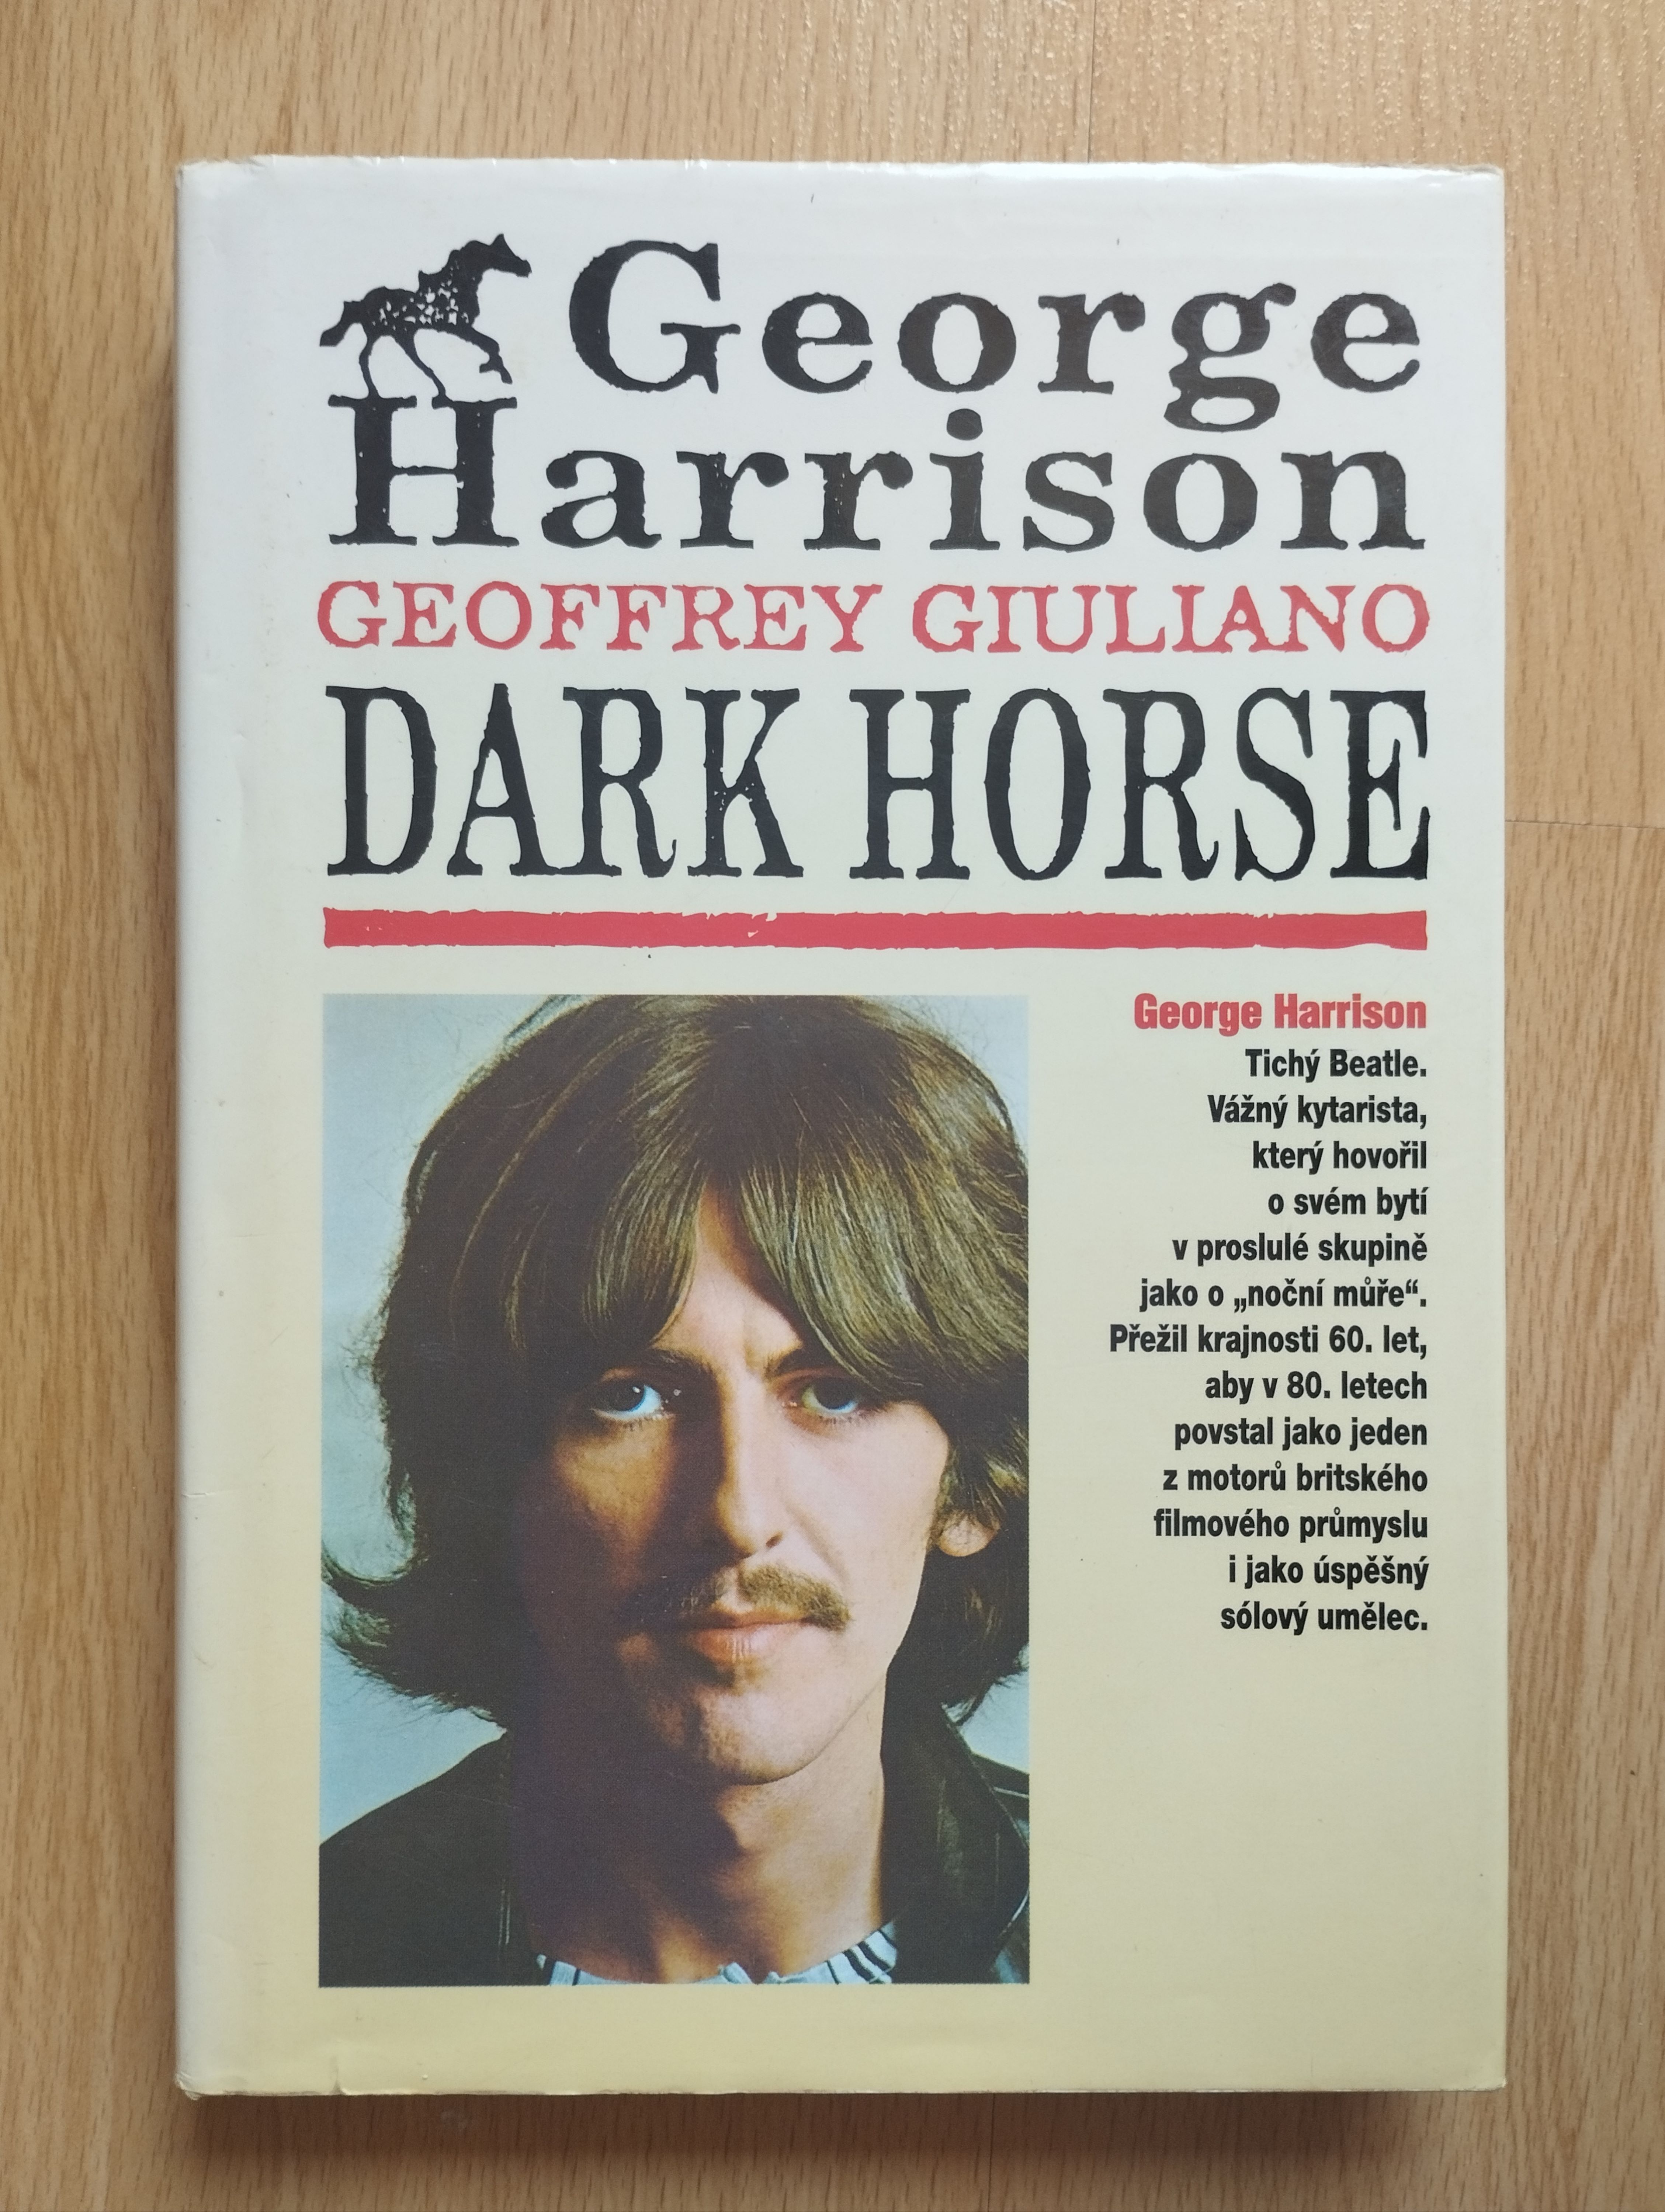 George Harrison, Dark horse